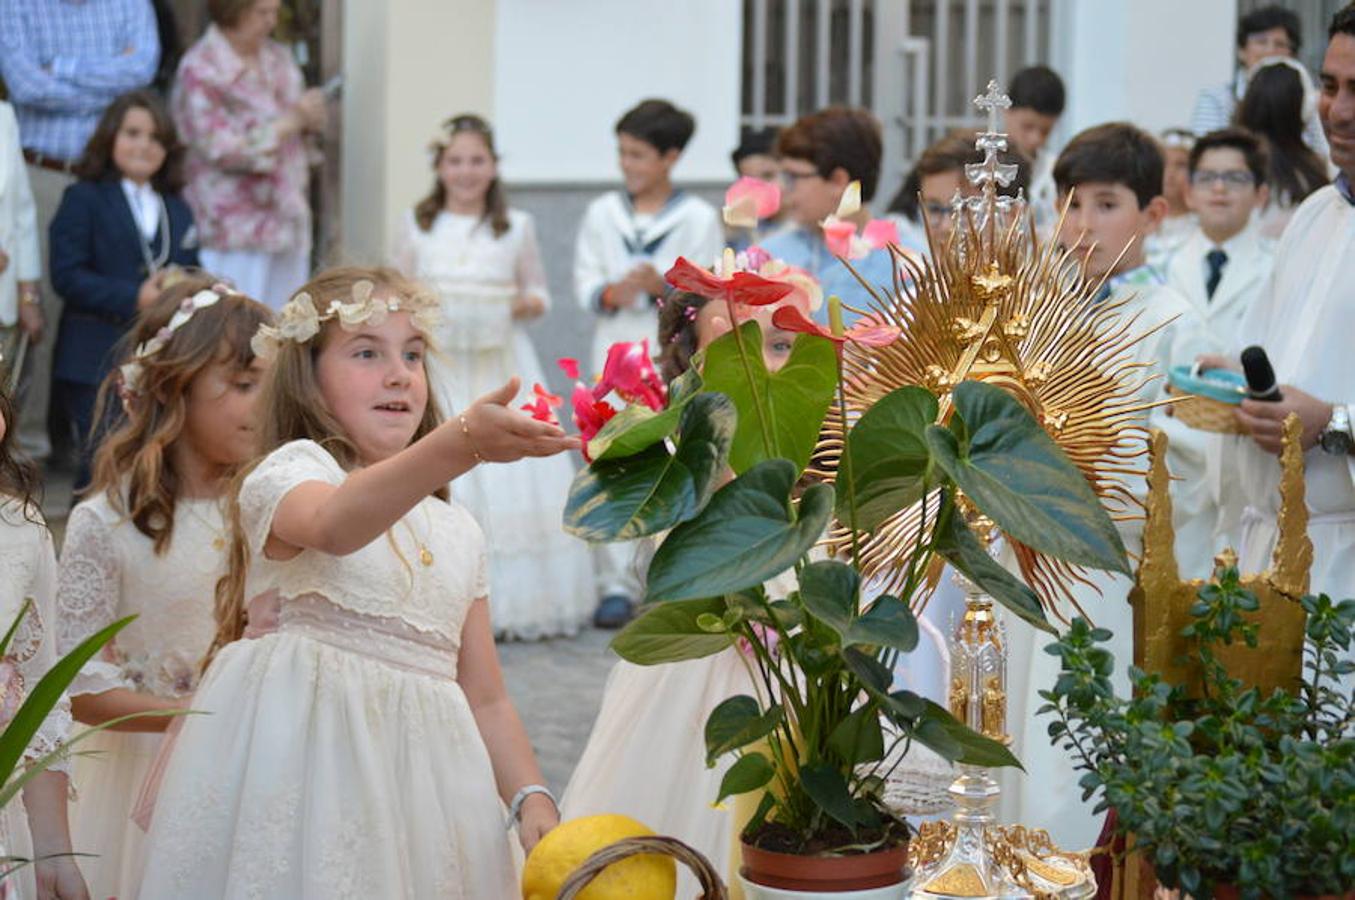 Concurrida procesión del Corpus Christi en Campanario